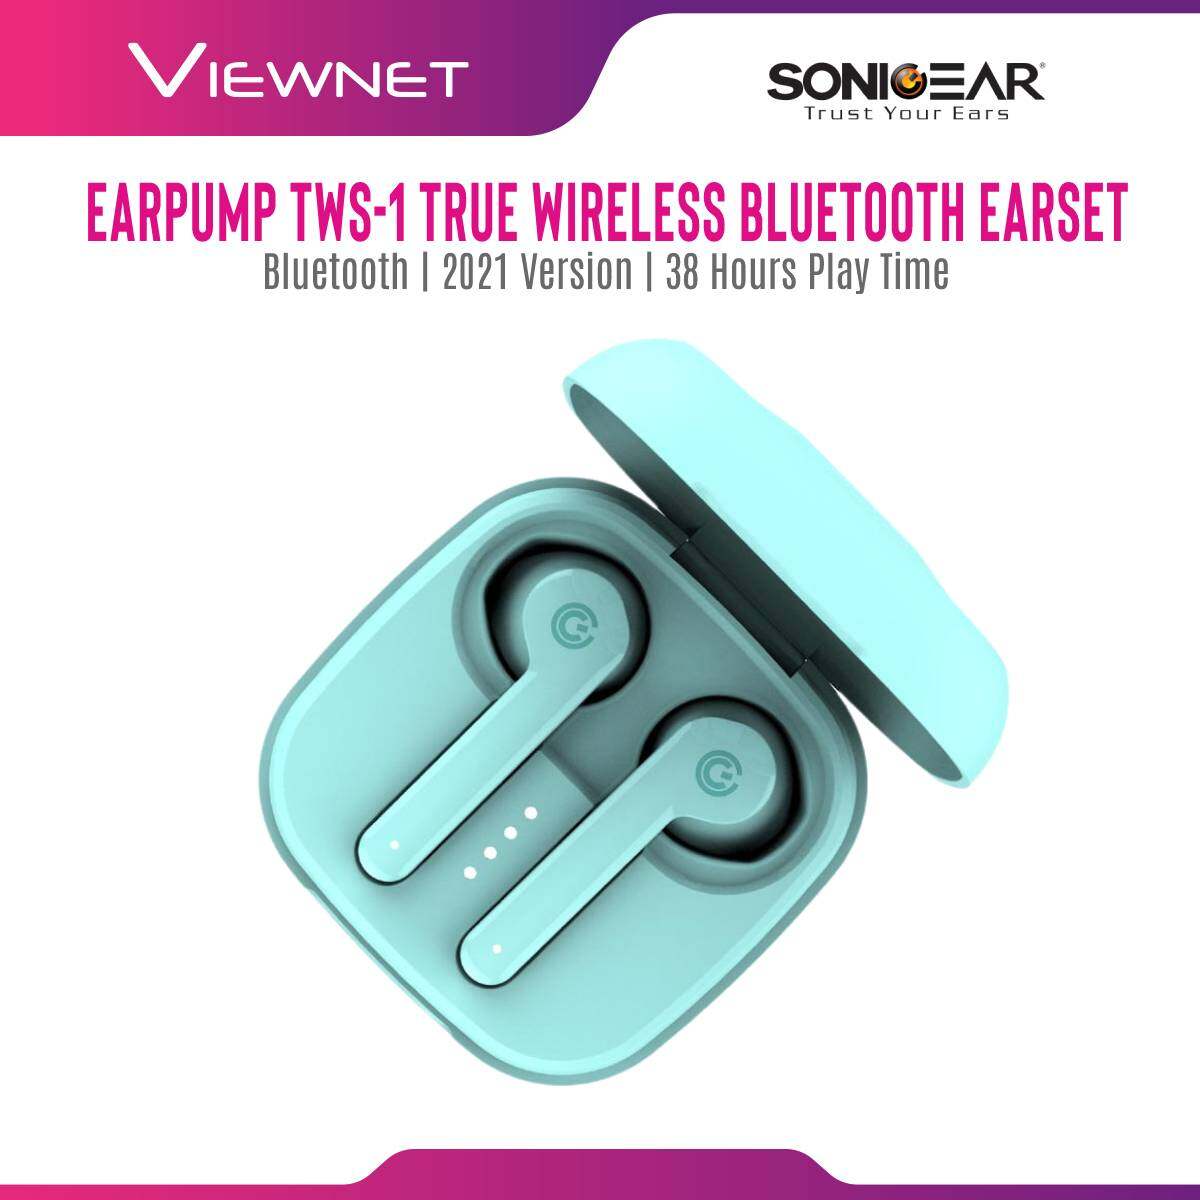 SonicGear Earpump TWS-1 True Wireless Bluetooth Earset